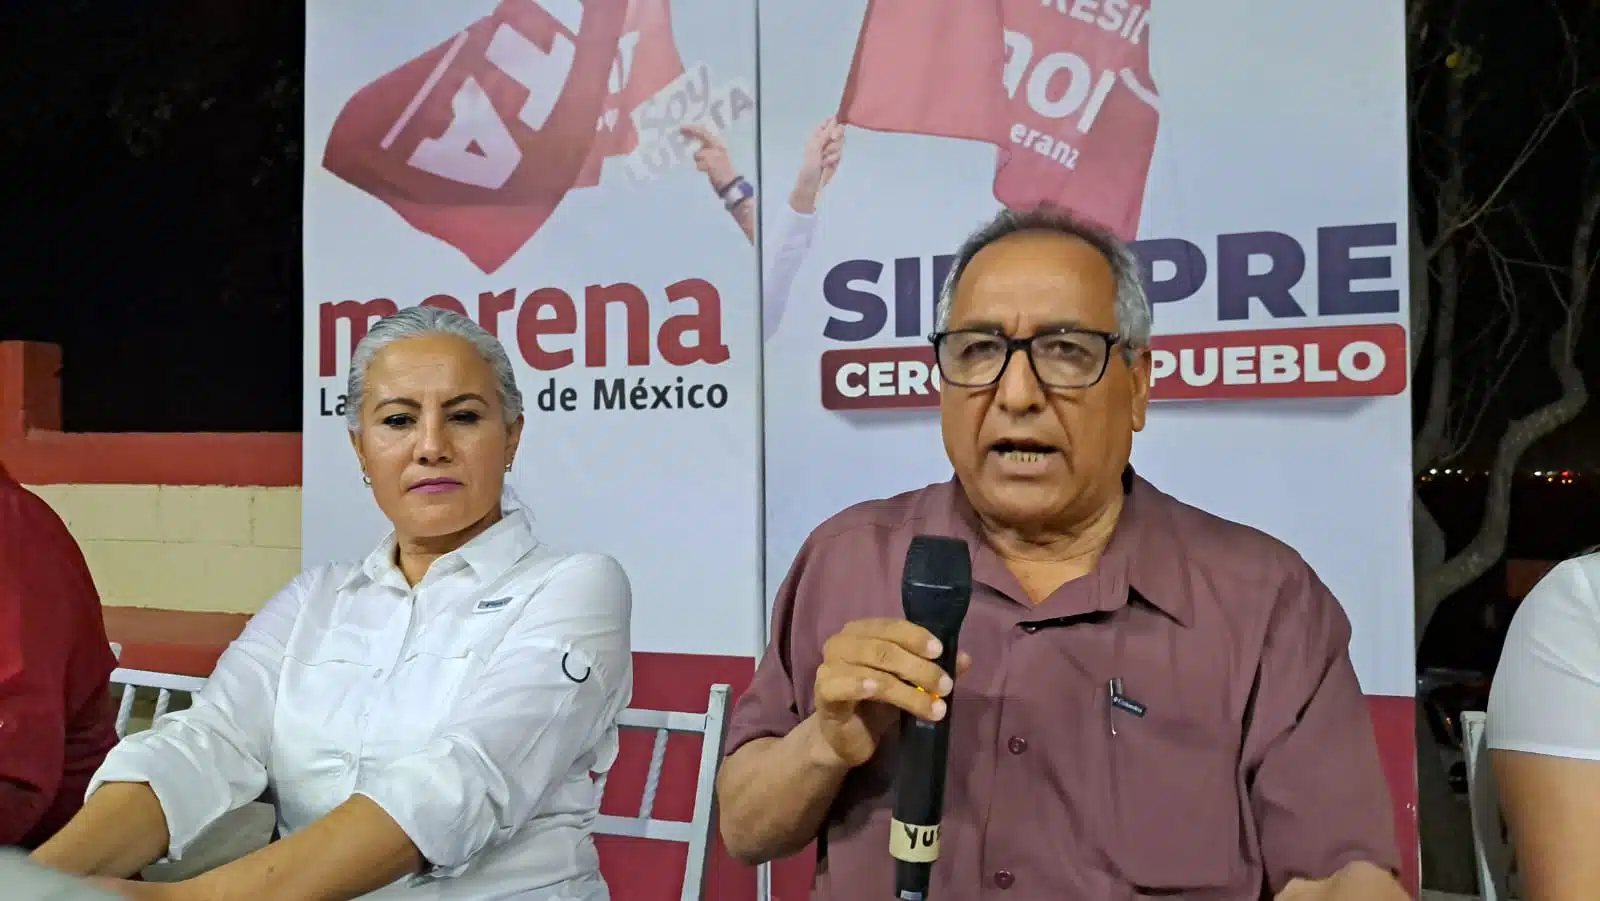 Ambrocio Chávez concreta su reelección como diputado local en el distrito 09